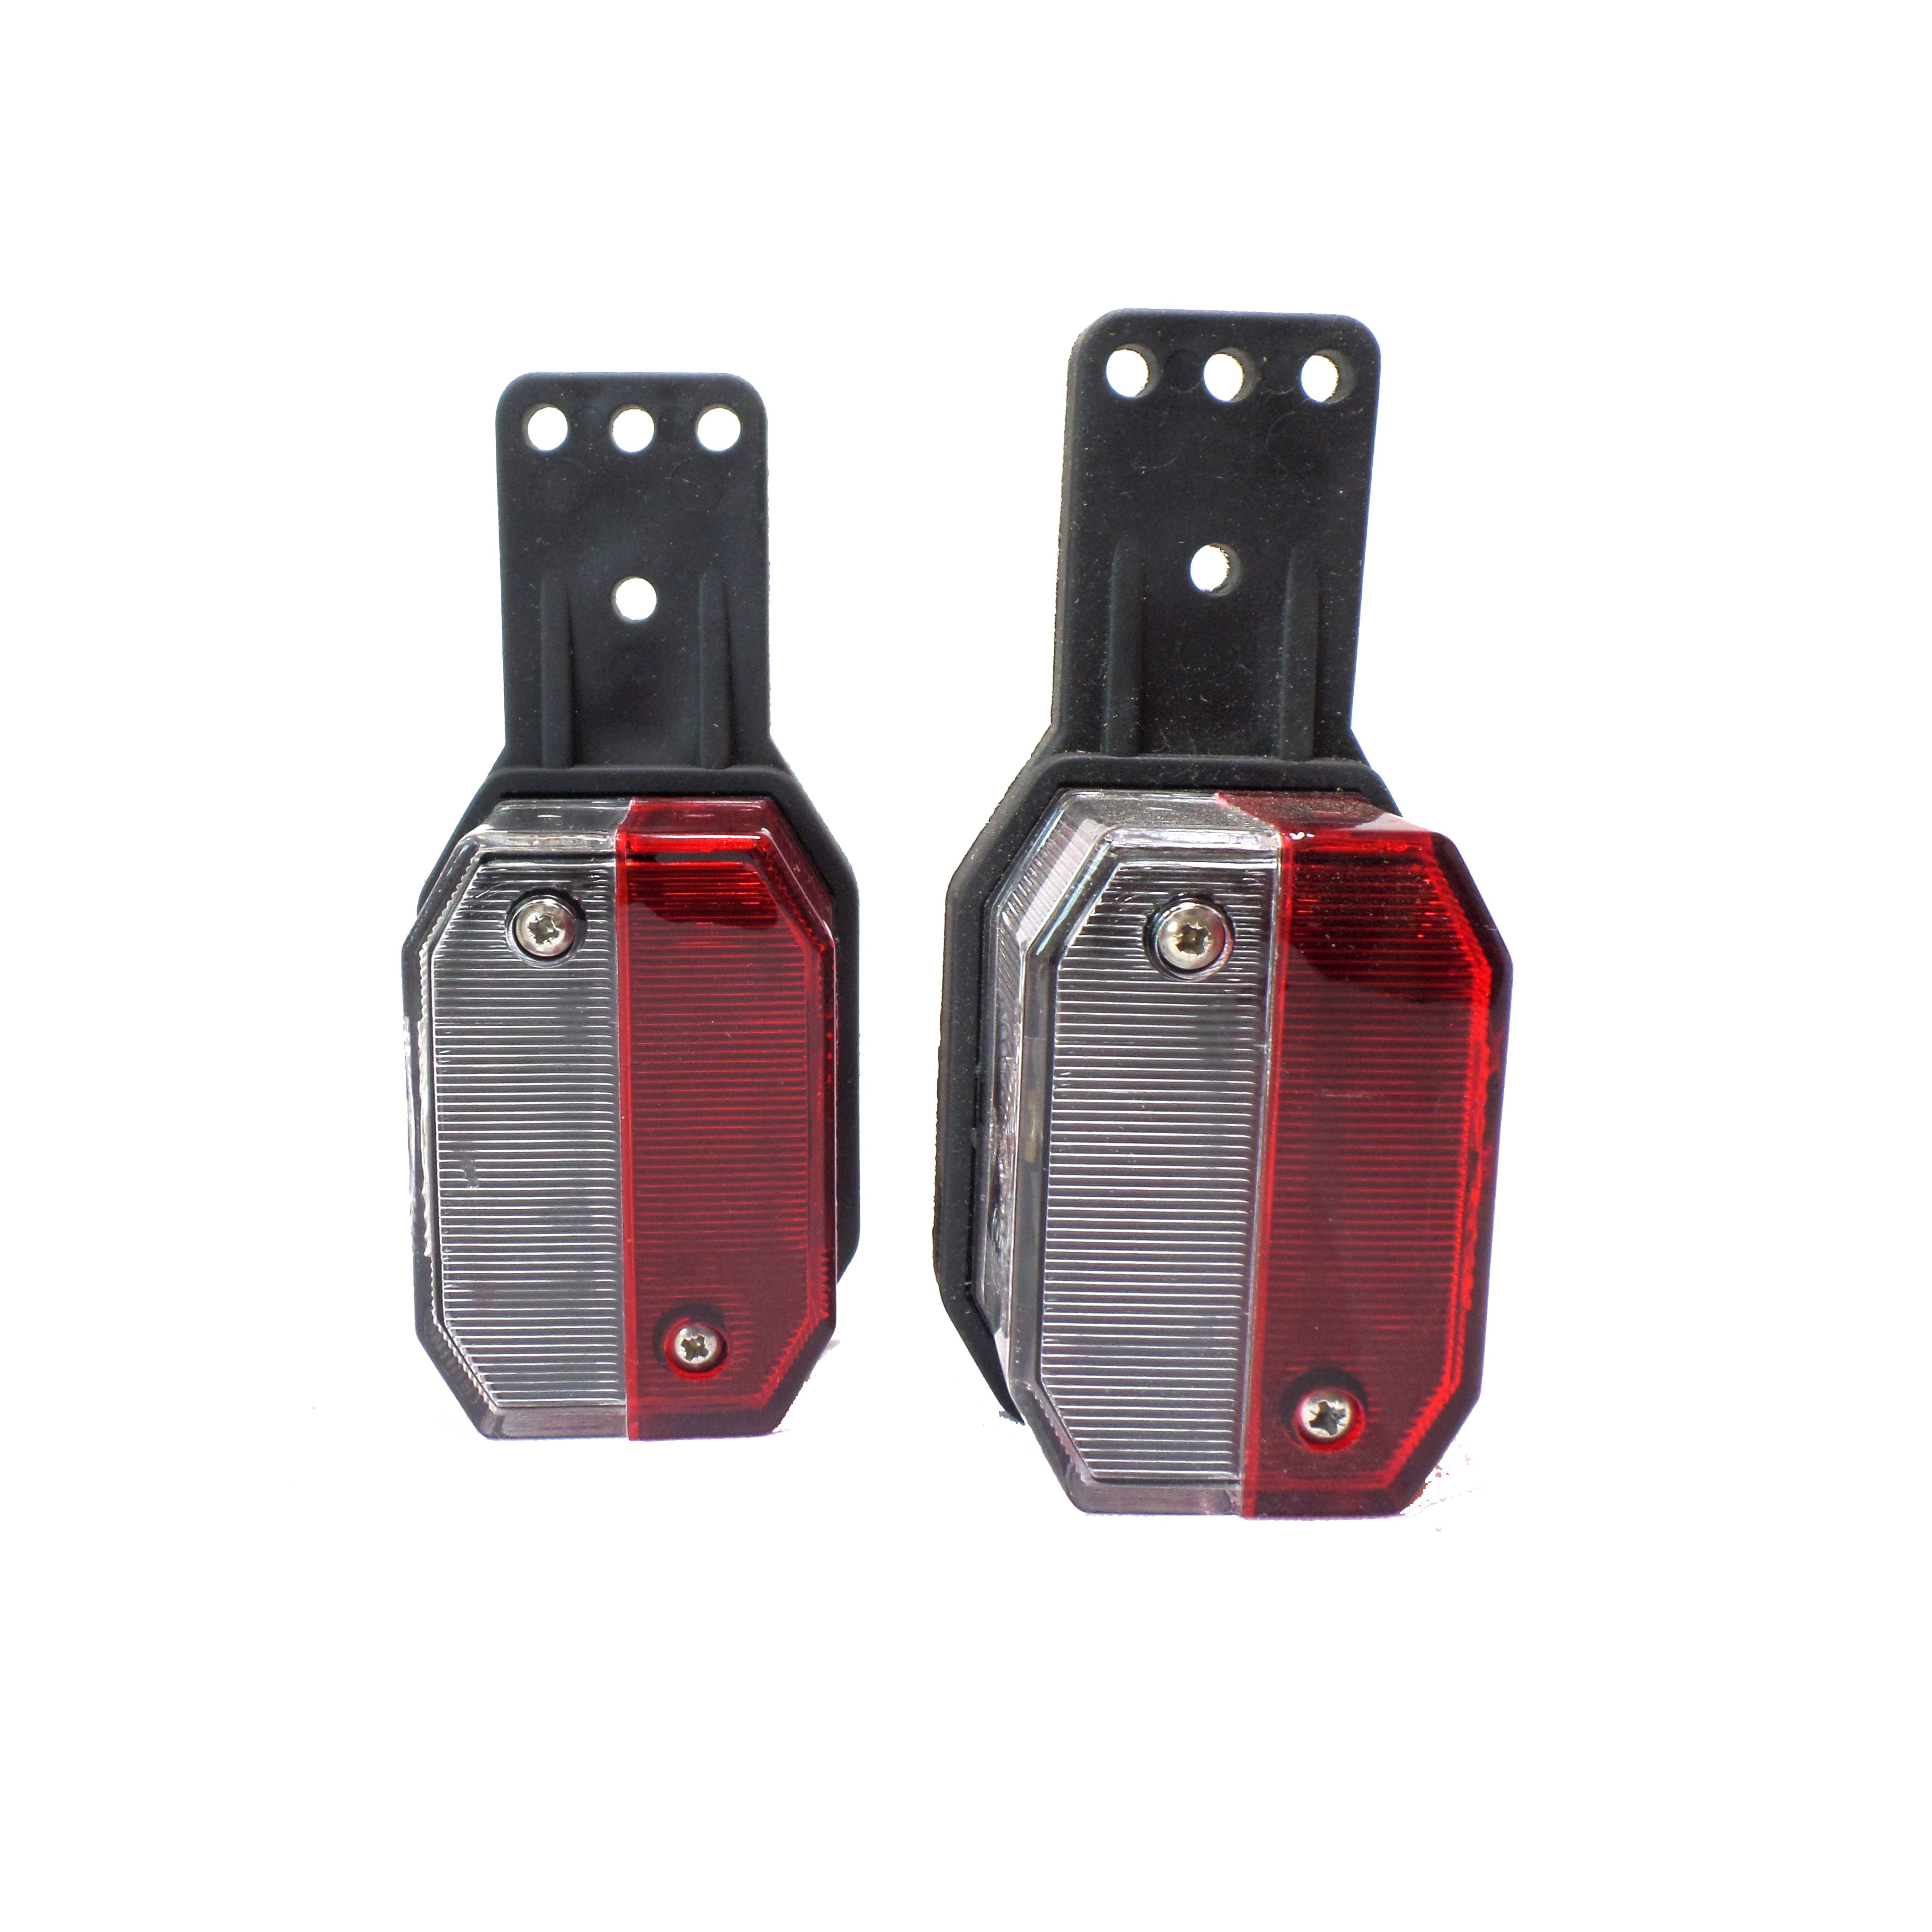 Aspöck Anhänger-Rückleuchte Leuchtmittel, Positionsleuchte Flexipoint 2x rot / - weiß ohne Umrissleuchte rot/weiß